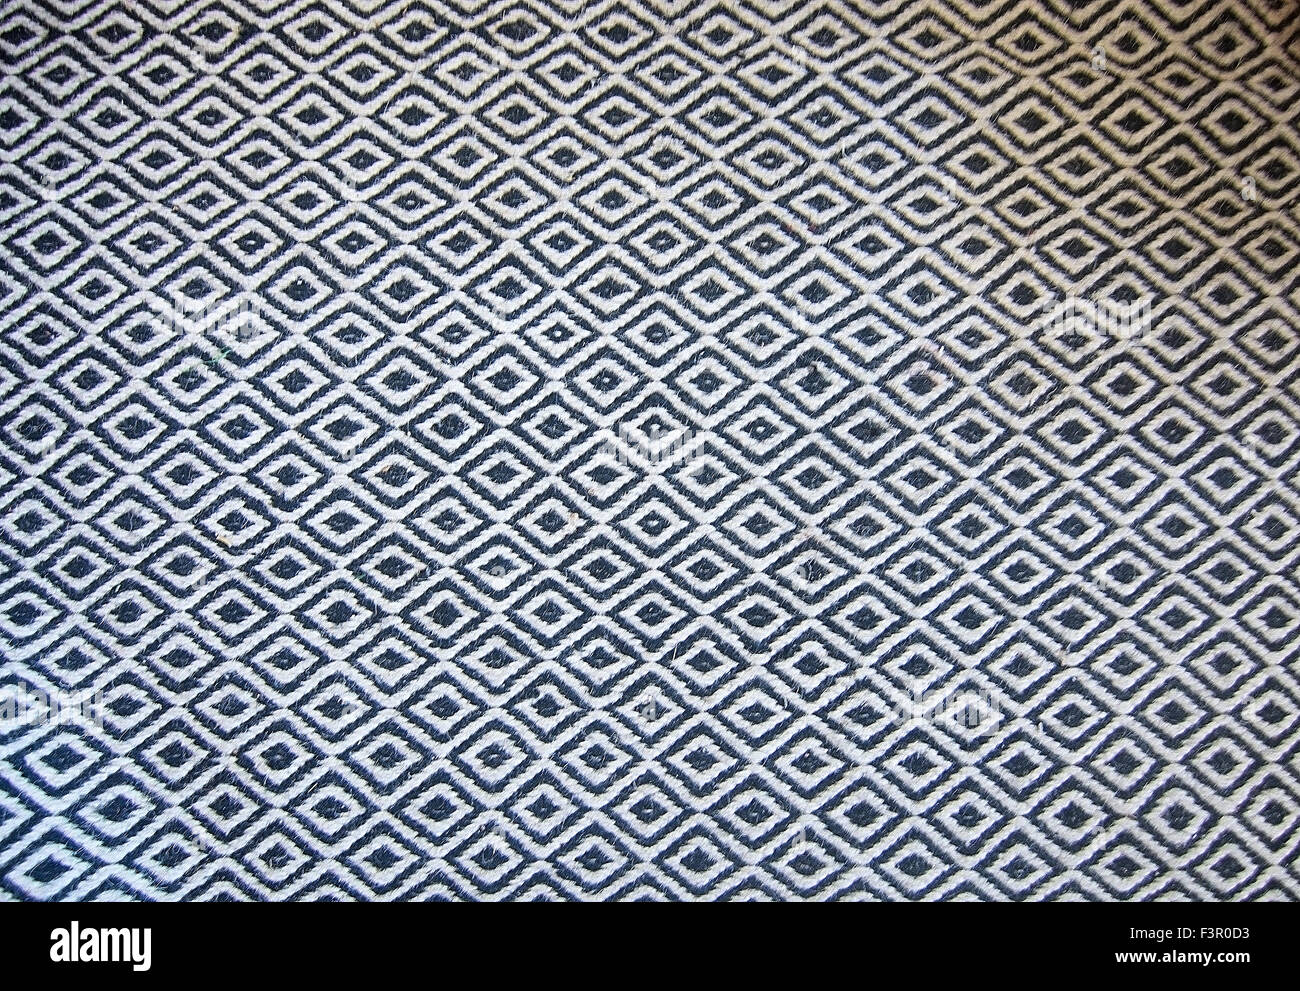 Schwarz / weiß Bodenbelag Wollteppich im klassischen Muster Hintergrund. Stockfoto